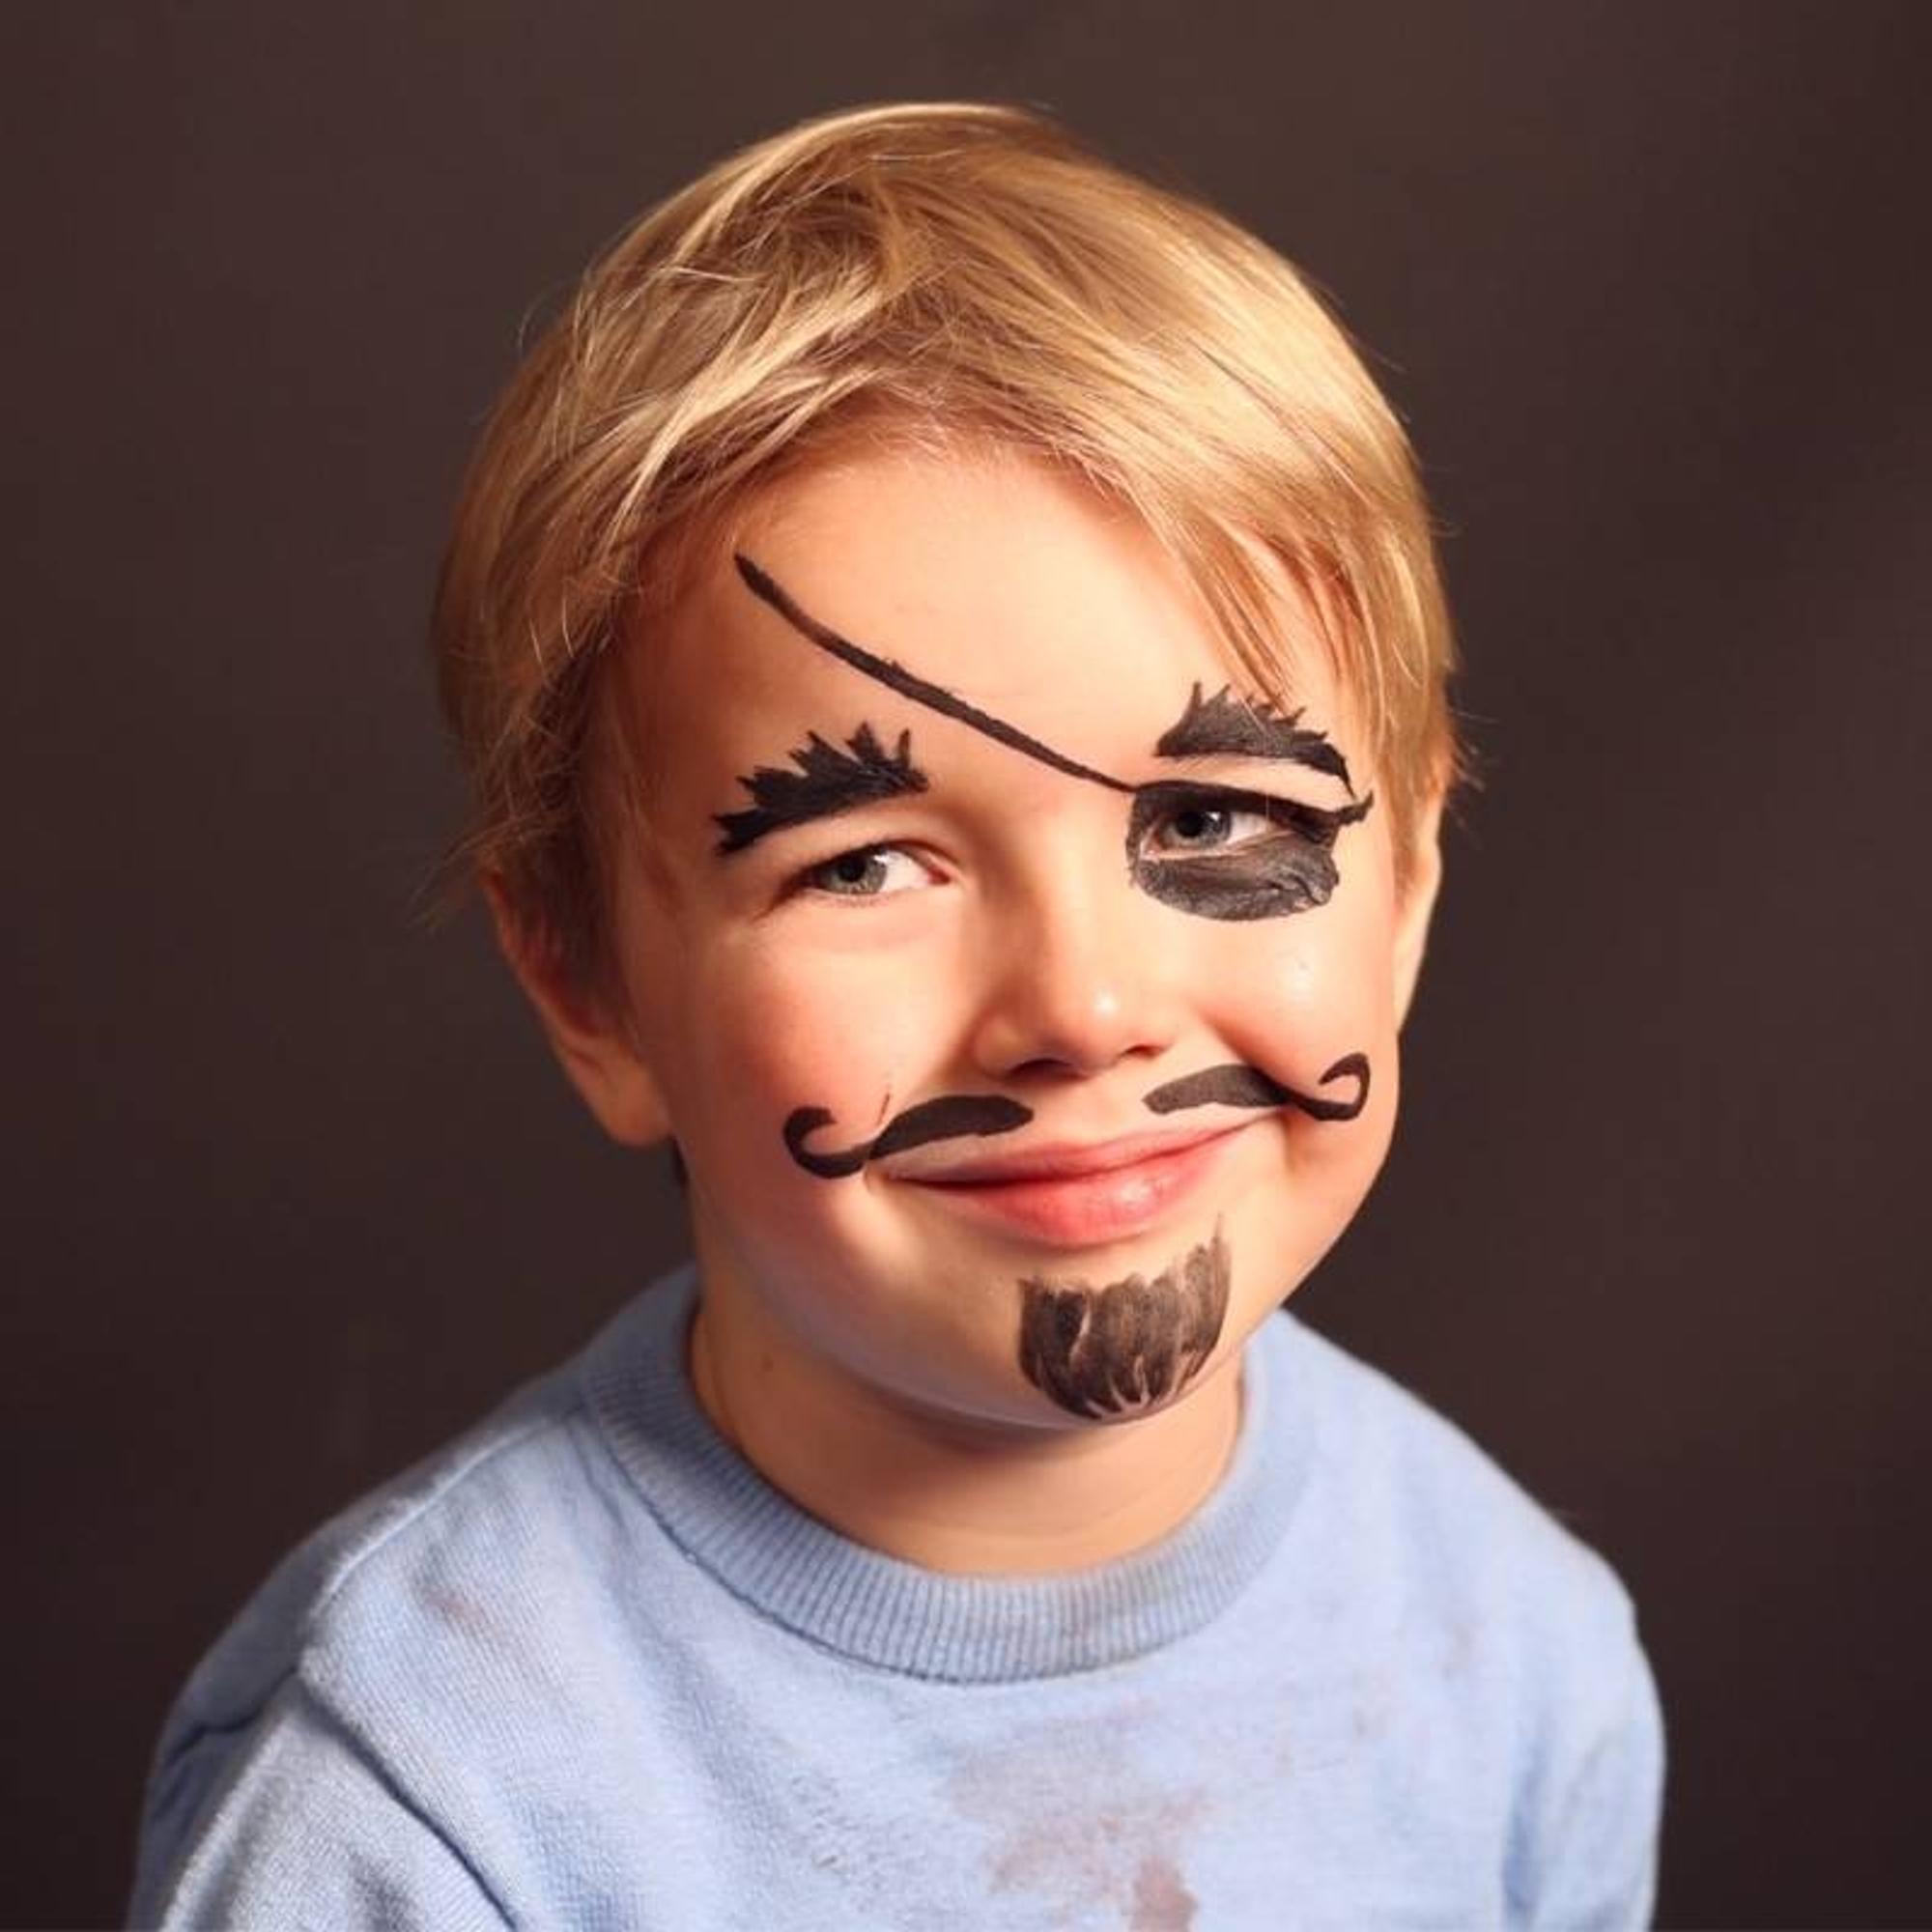 Pirat schminken: fertiges Ergebnis mit Bart